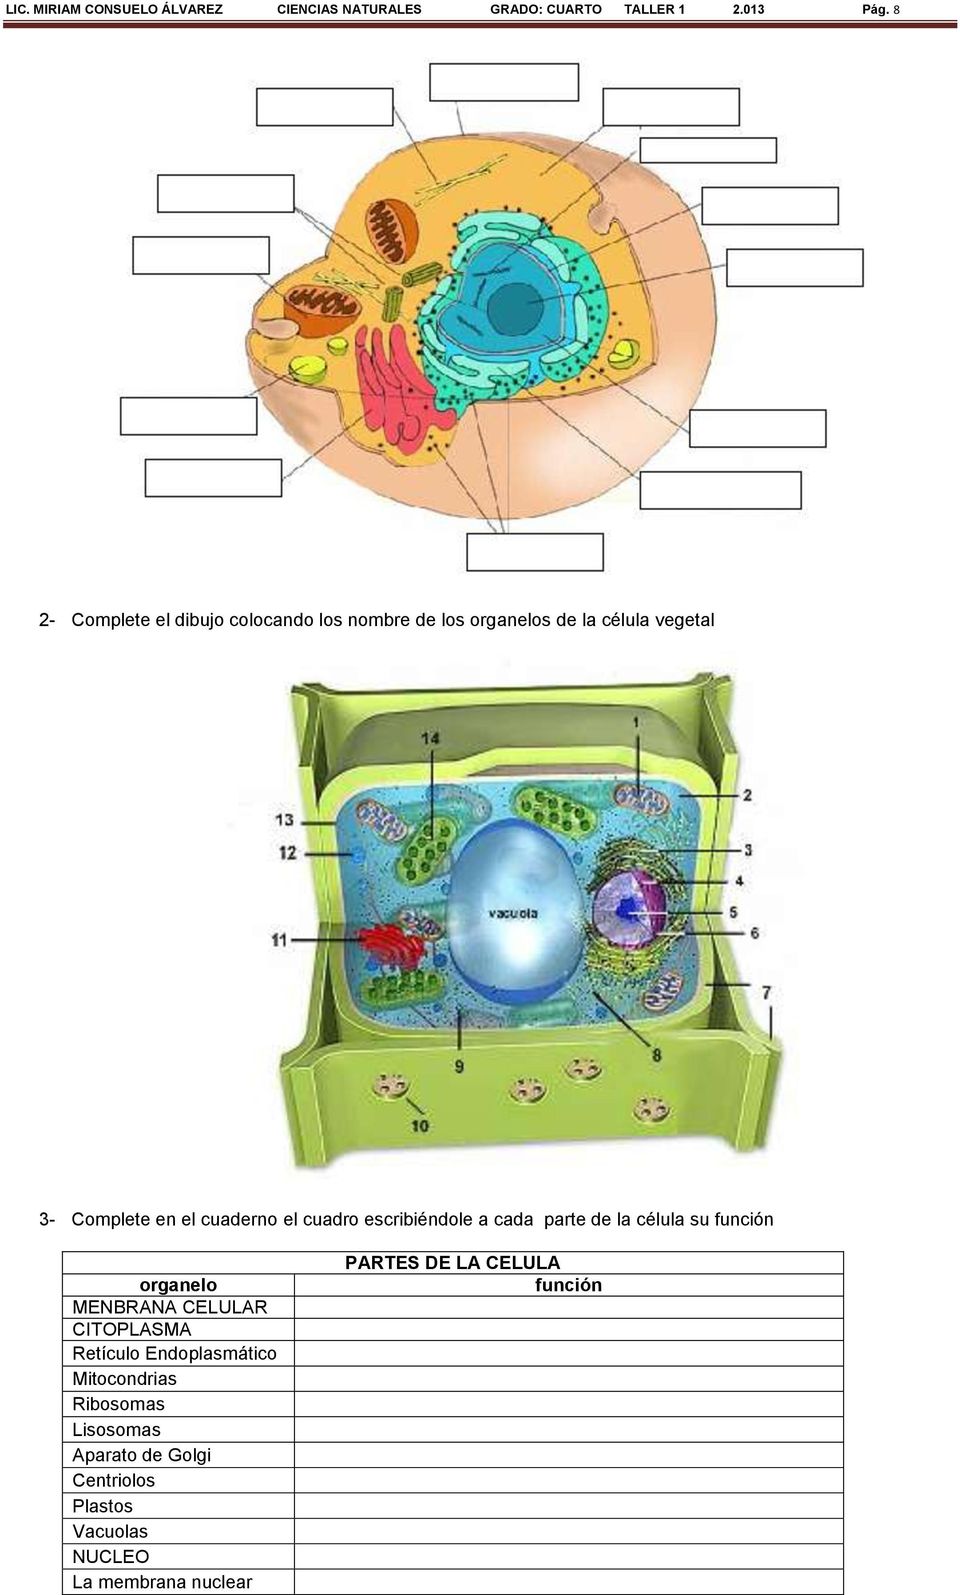 el cuadro escribiéndole a cada parte de la célula su función organelo MENBRANA CELULAR CITOPLASMA Retículo